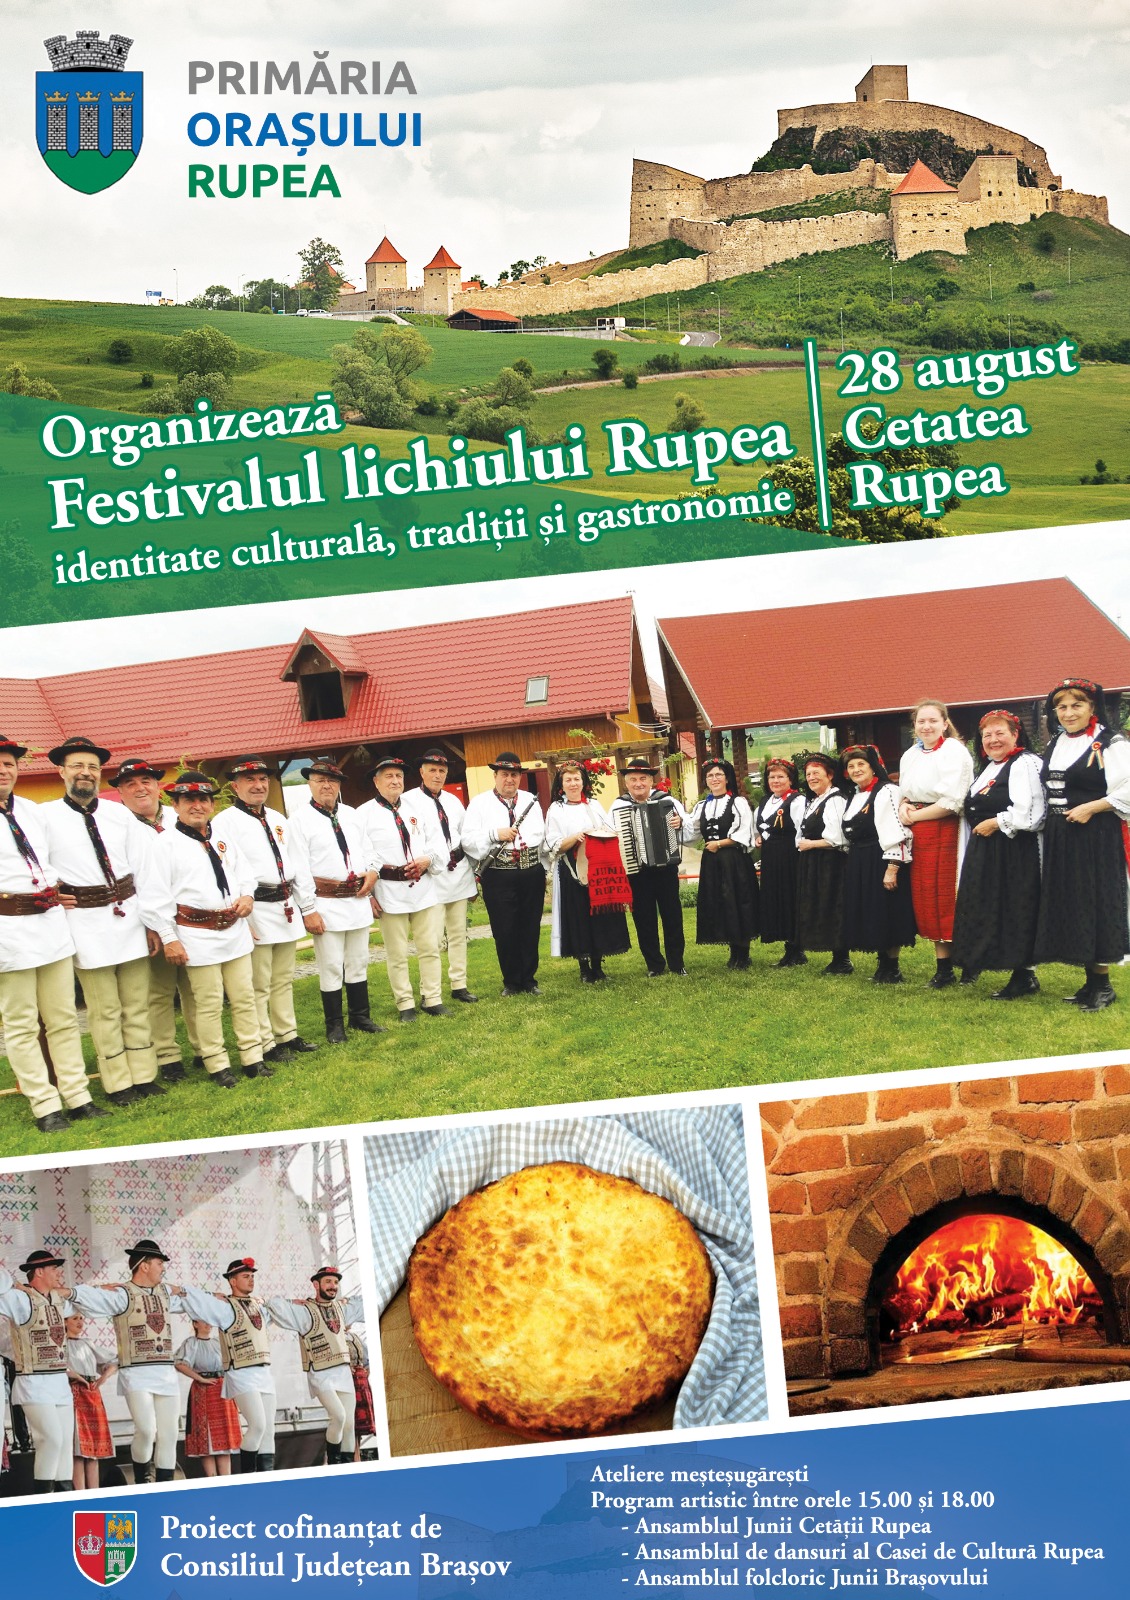 Festivalul lichiului Rupea – identitate culturală, tradiții și gastronomie”